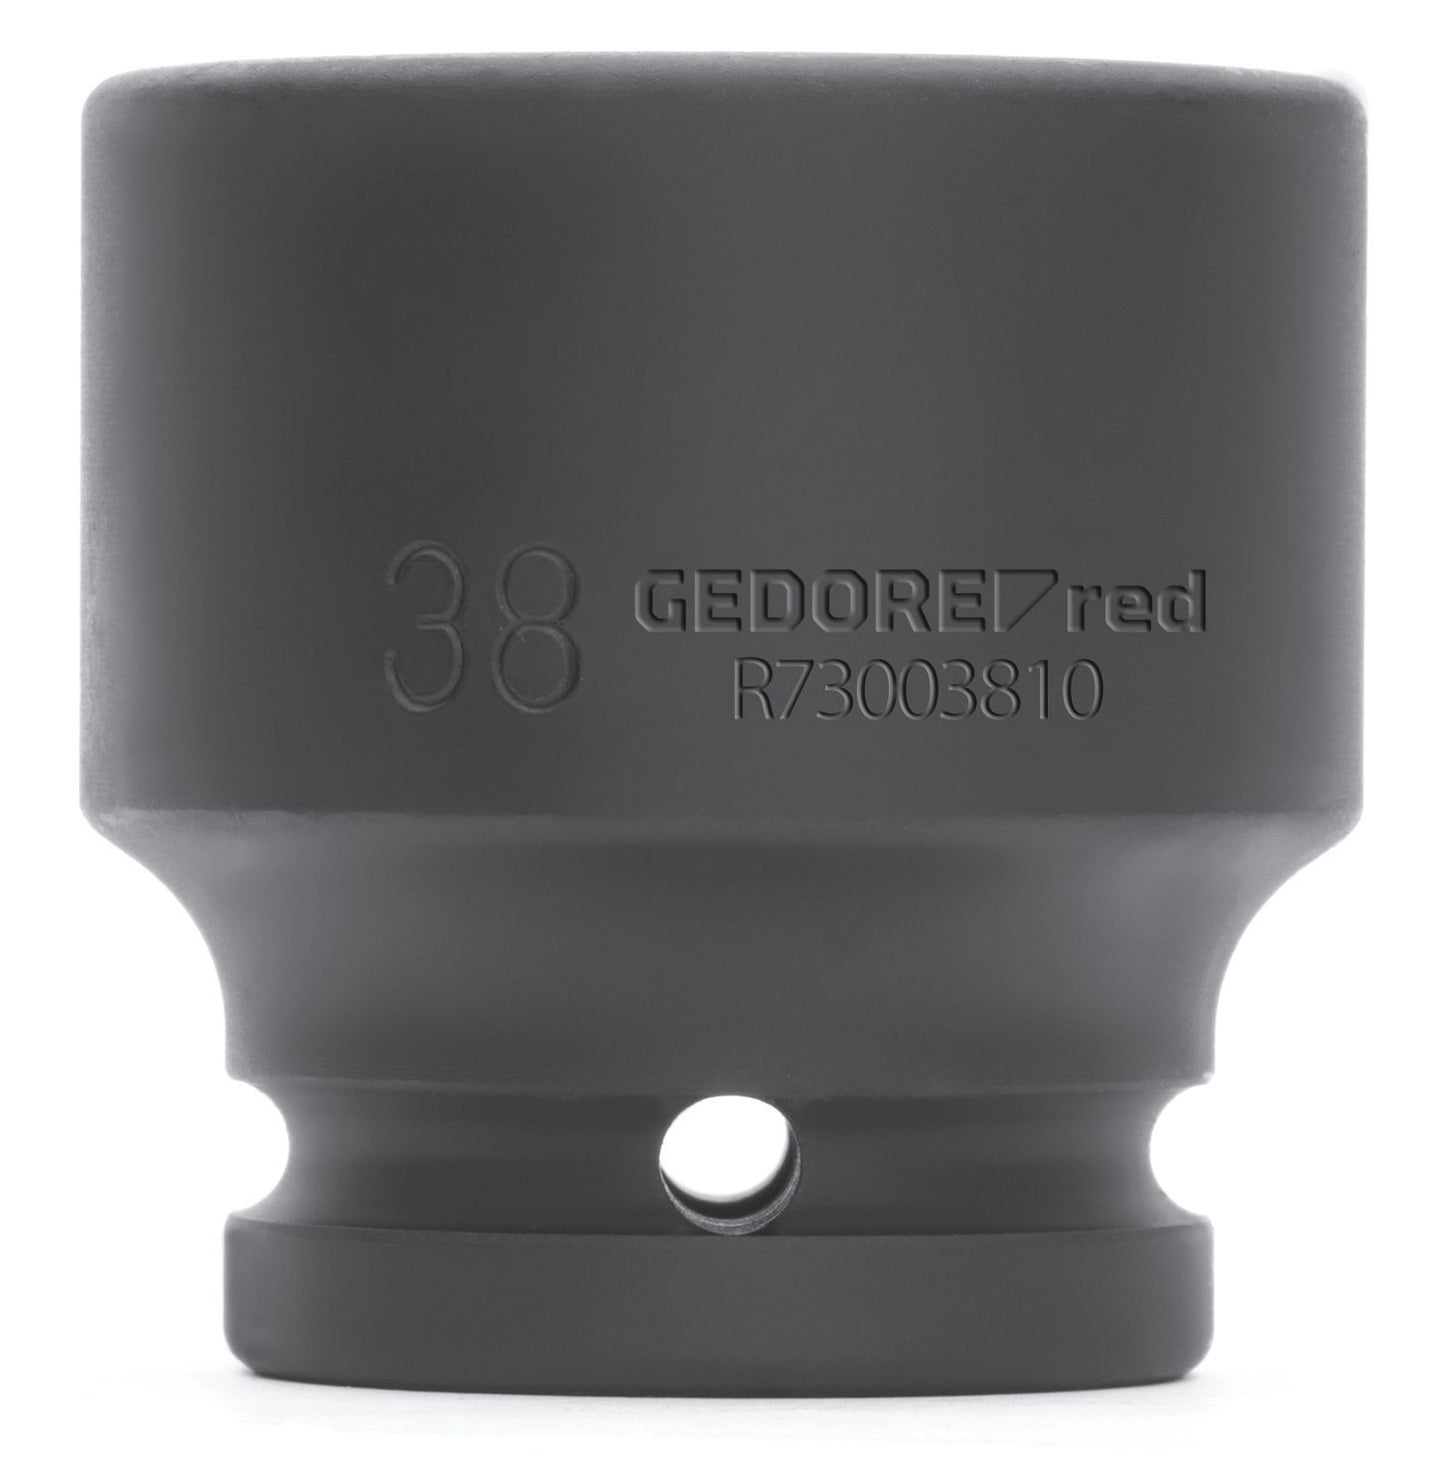 GEDORE red R73002309 - Vaso de impacto 3/4", hexagonal, 23 mm L=50 mm (3300594)